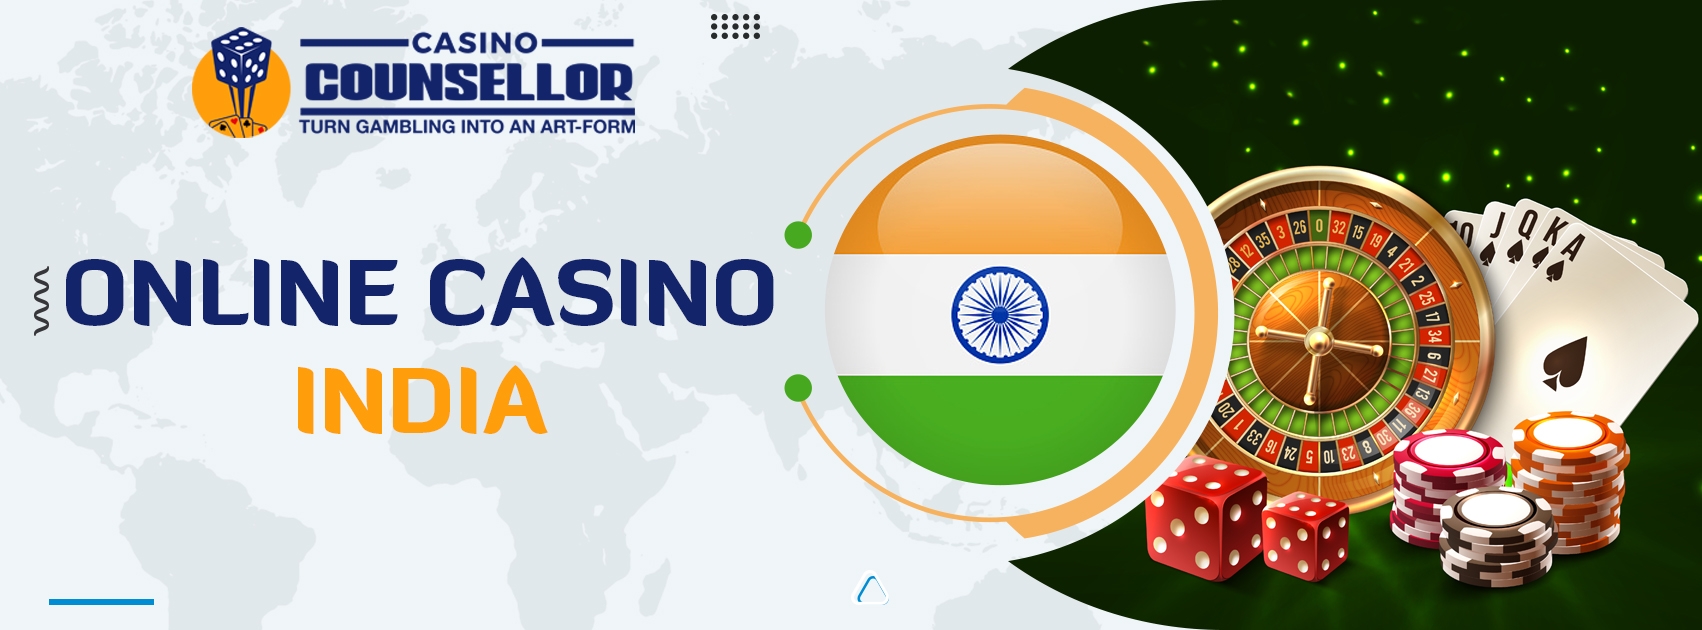 online casino india, online casino games india